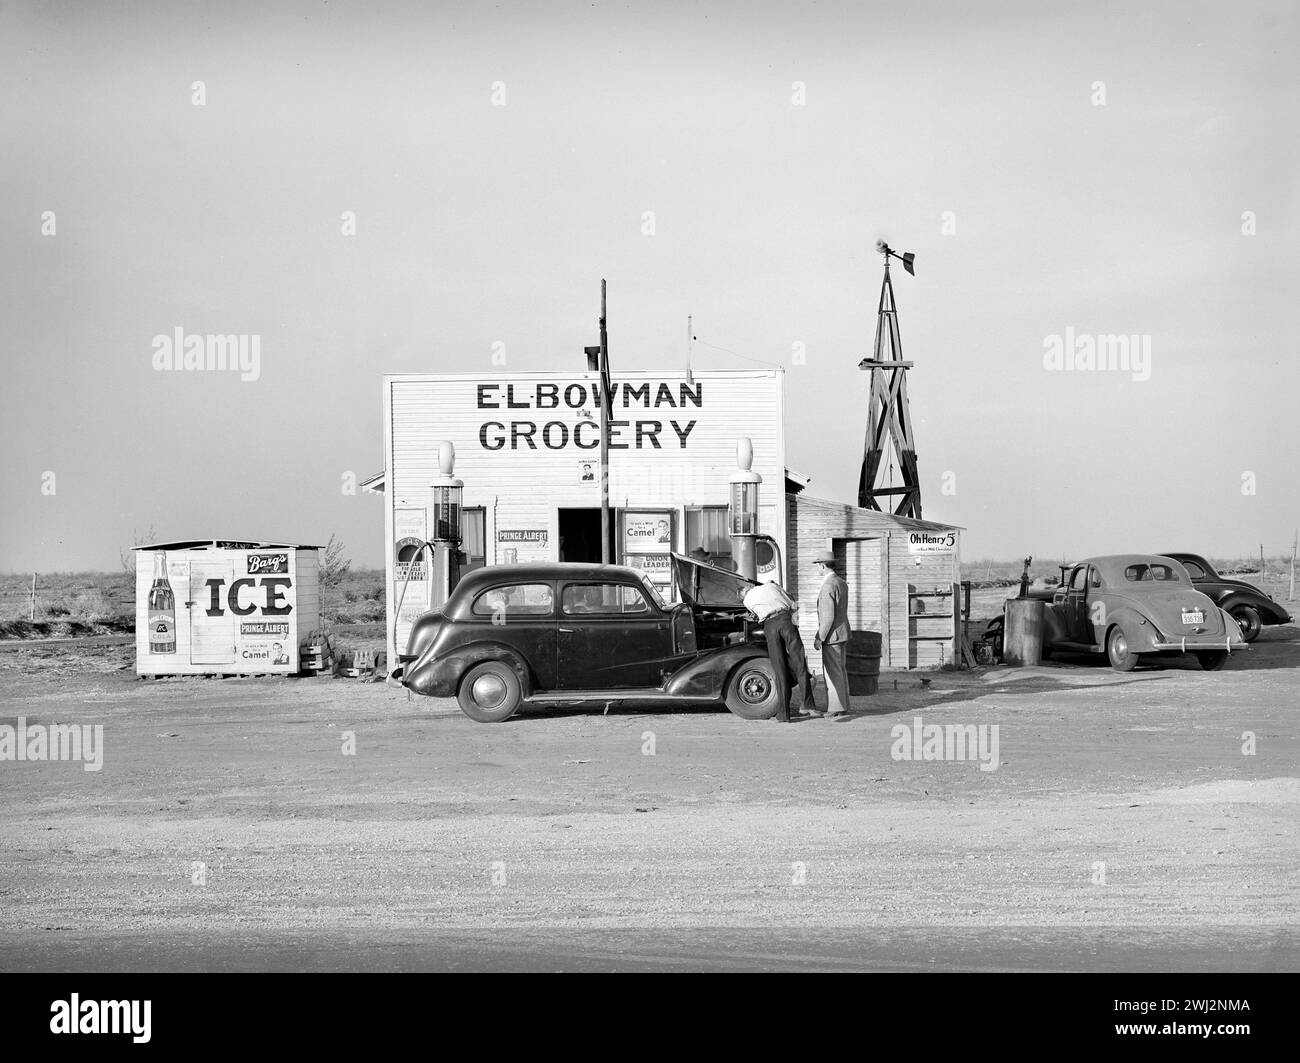 Épicerie et station de remplissage dans les hautes plaines. Comté de Dawson, Texas, États-Unis, Russell Lee, U.S. Farm Security Administration, mars 1940 Banque D'Images